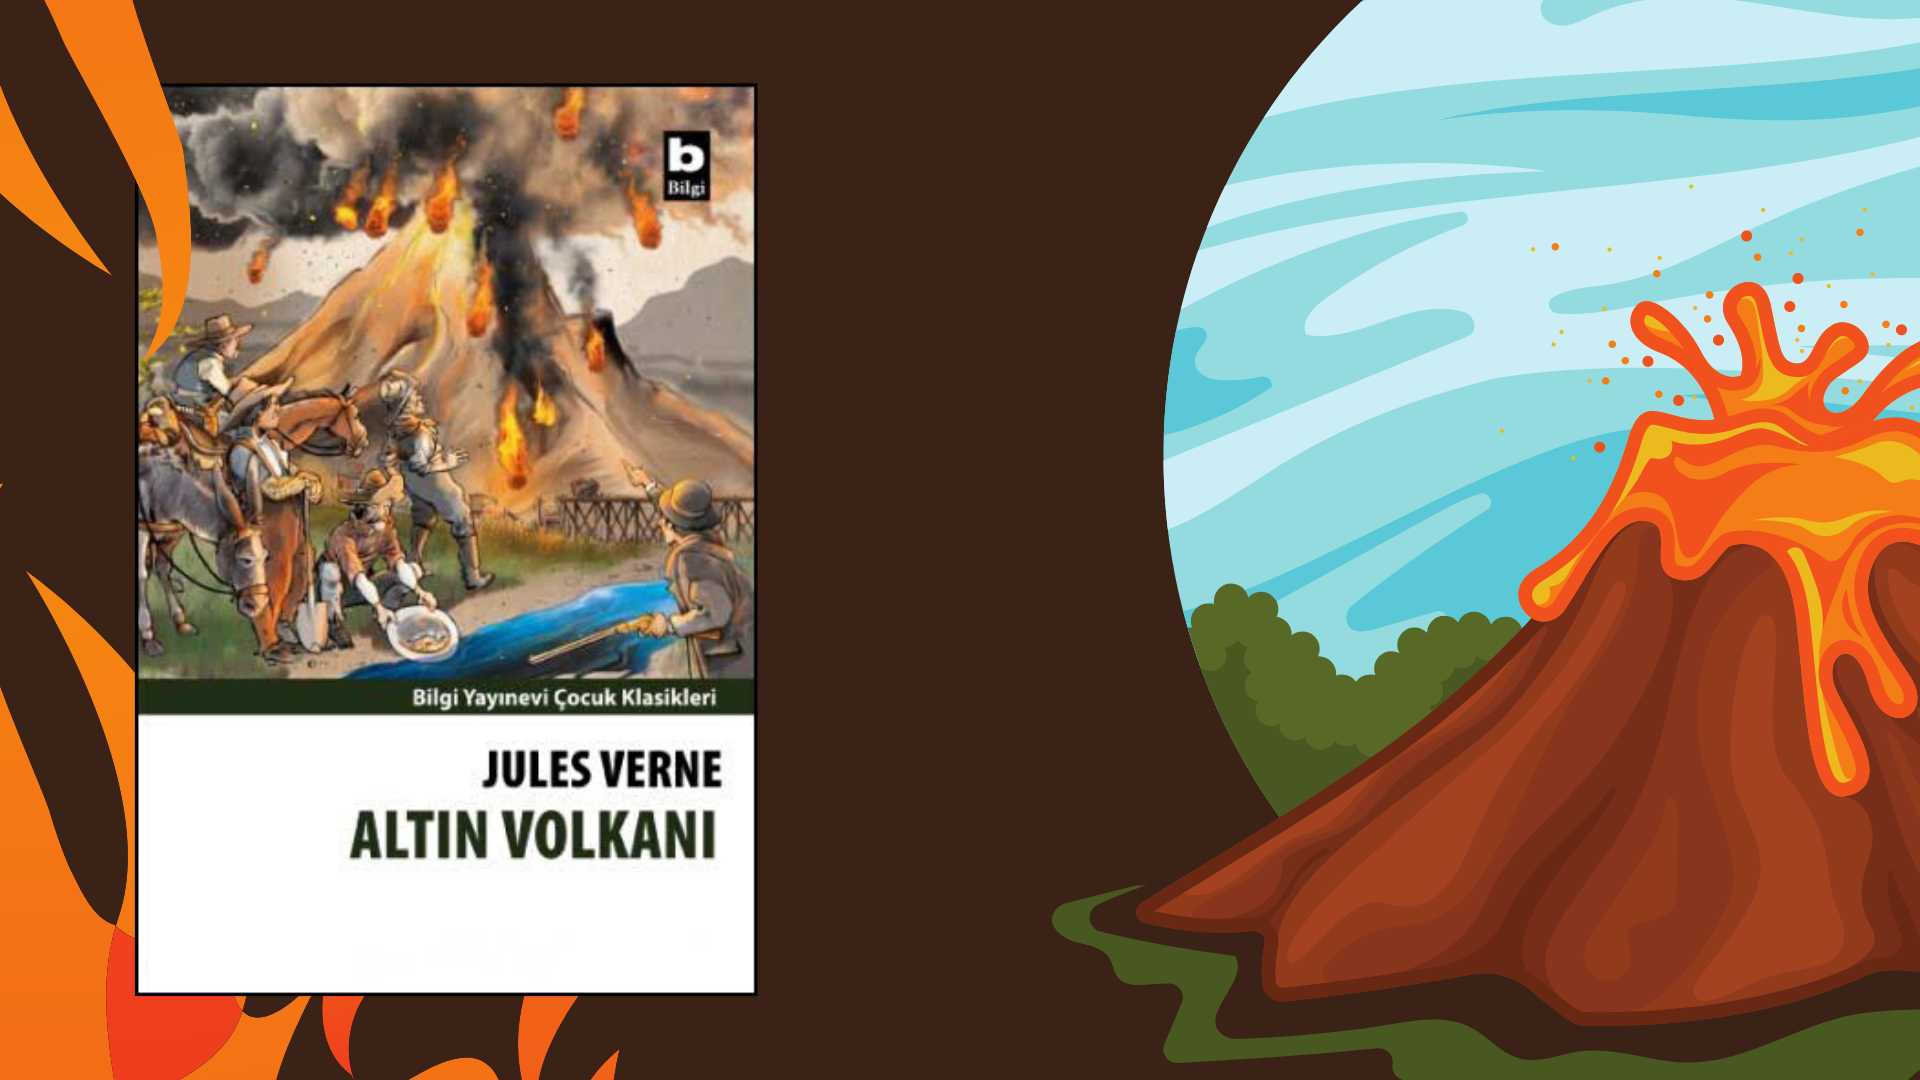 Kitap: Altın Volkanı | Yazar: Jules Verne | Yorumlayan: Hülya Erarslan